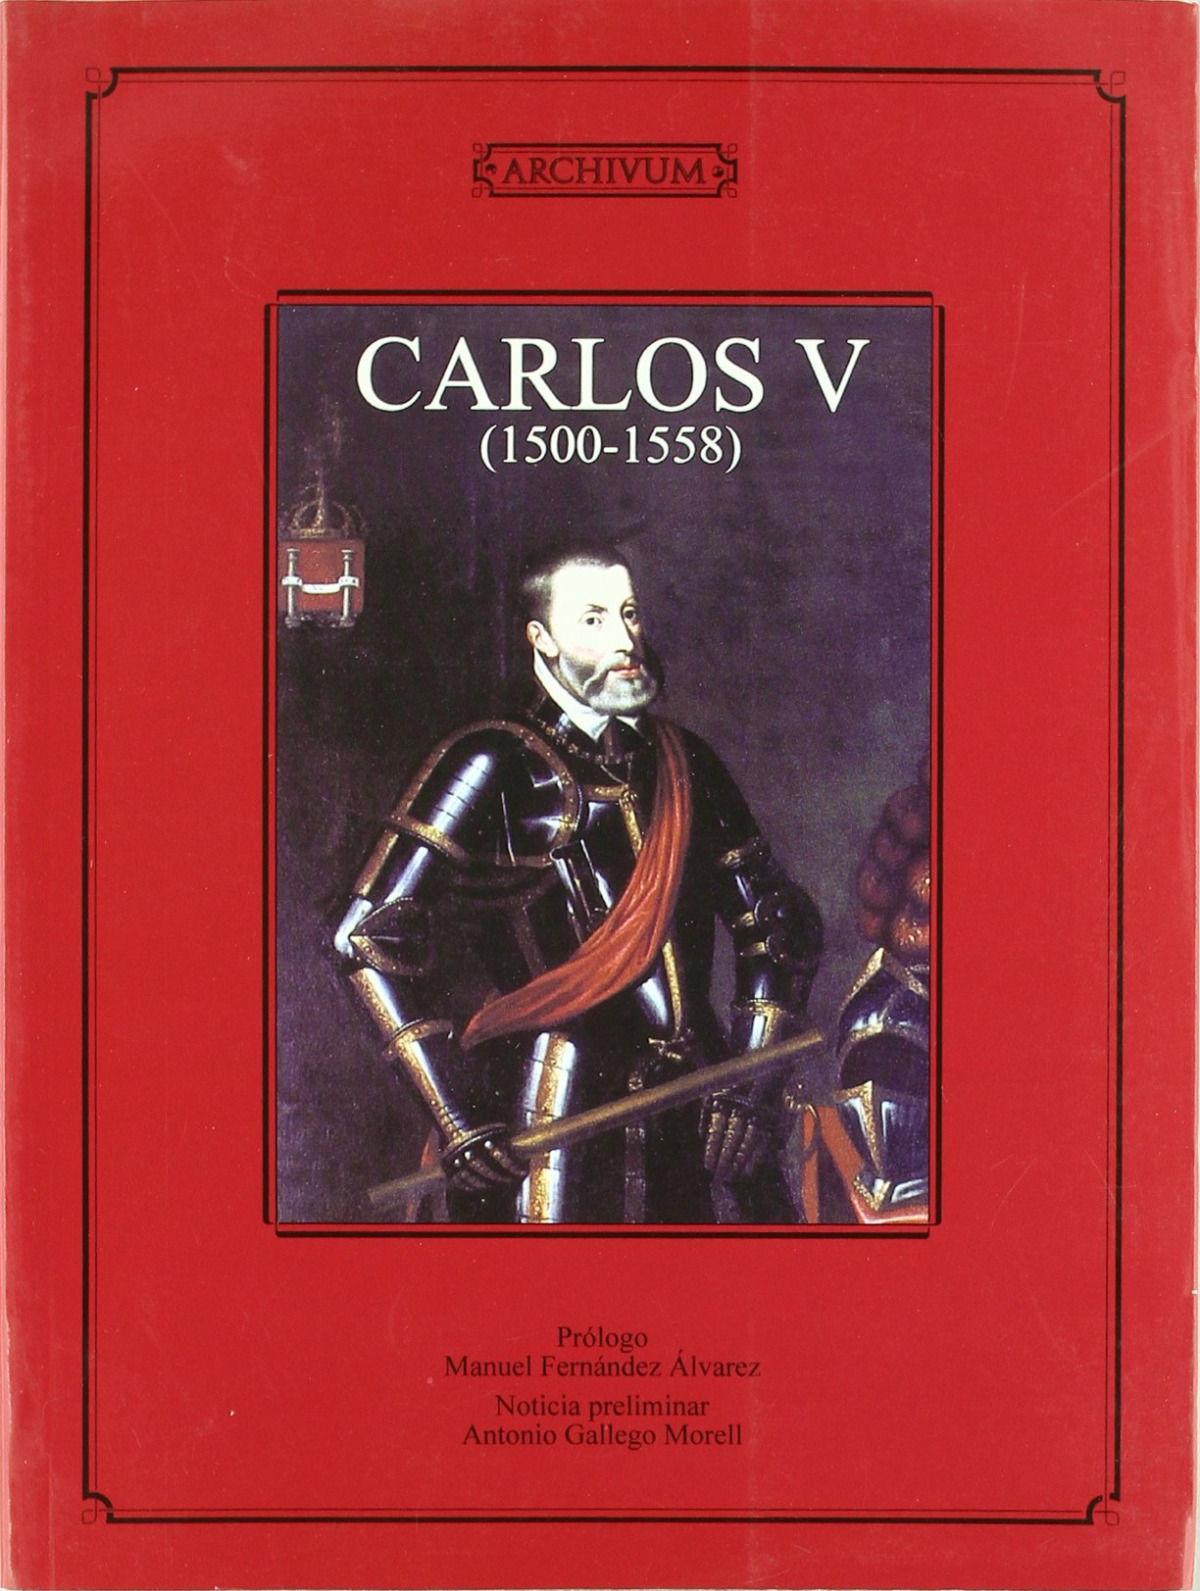 Carlos v ( 1500-1558 ) prologo de manuel fernandez alvarez - Sin Autor